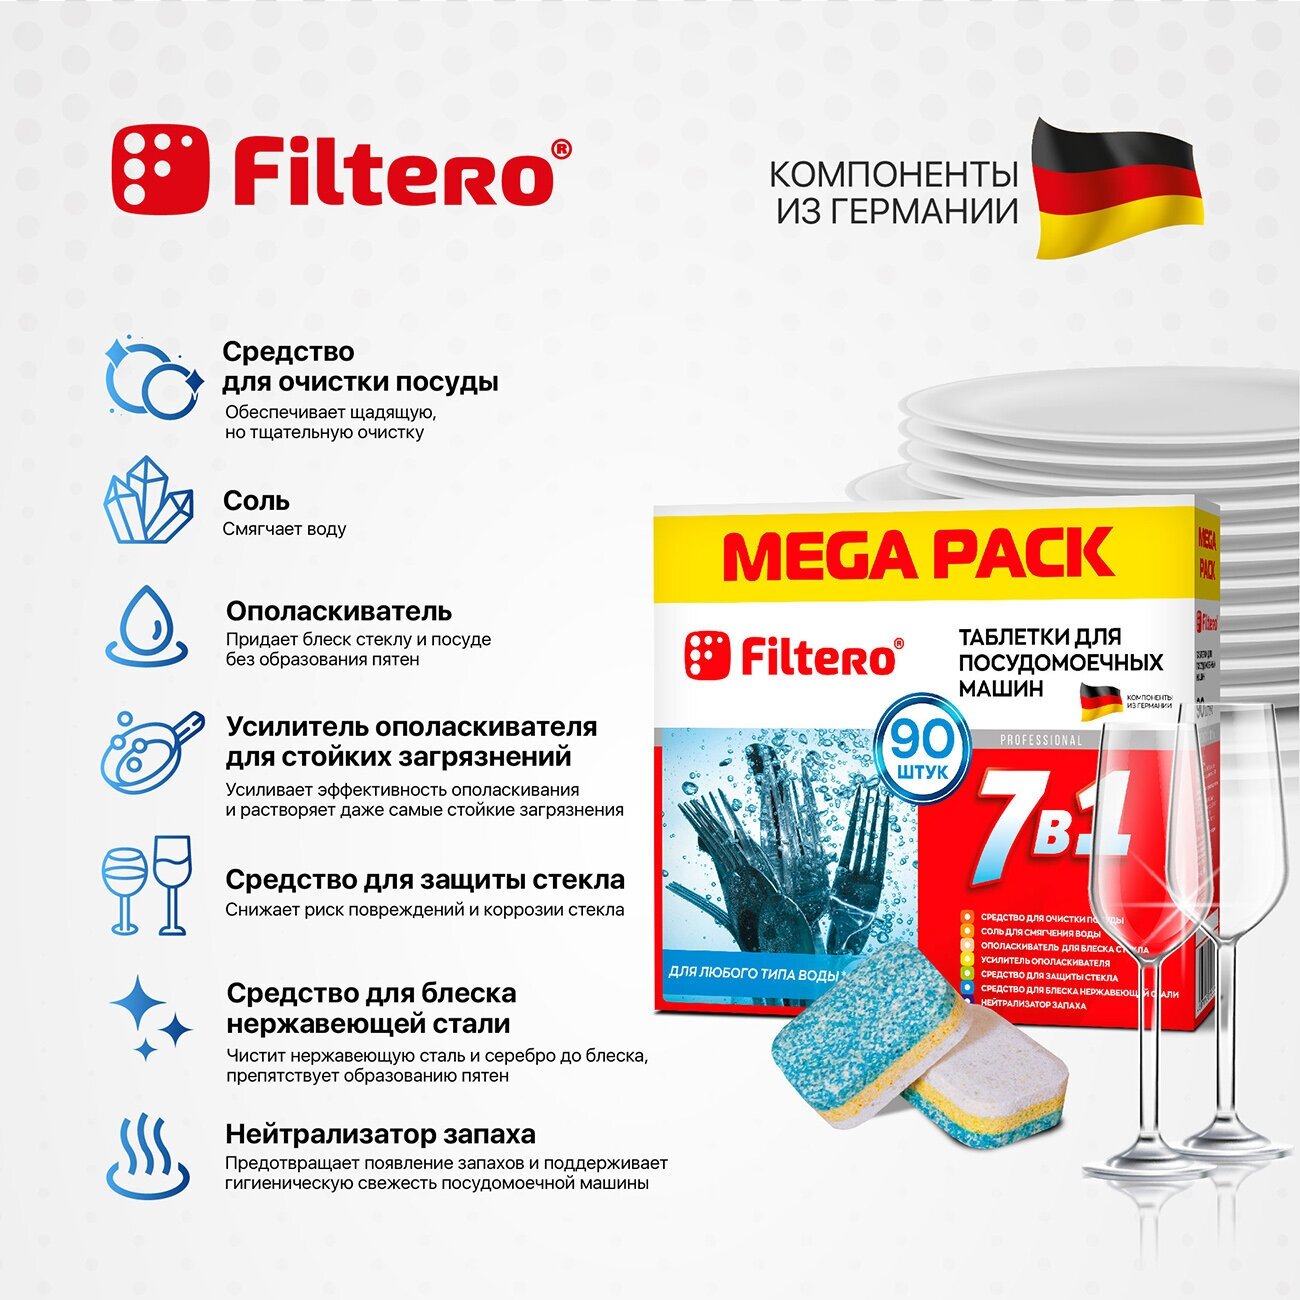 Таблетки Filtero для посудомоечных машин 7 в 1, 90 штук, арт, 703, MEGA PACK, средство для ПММ